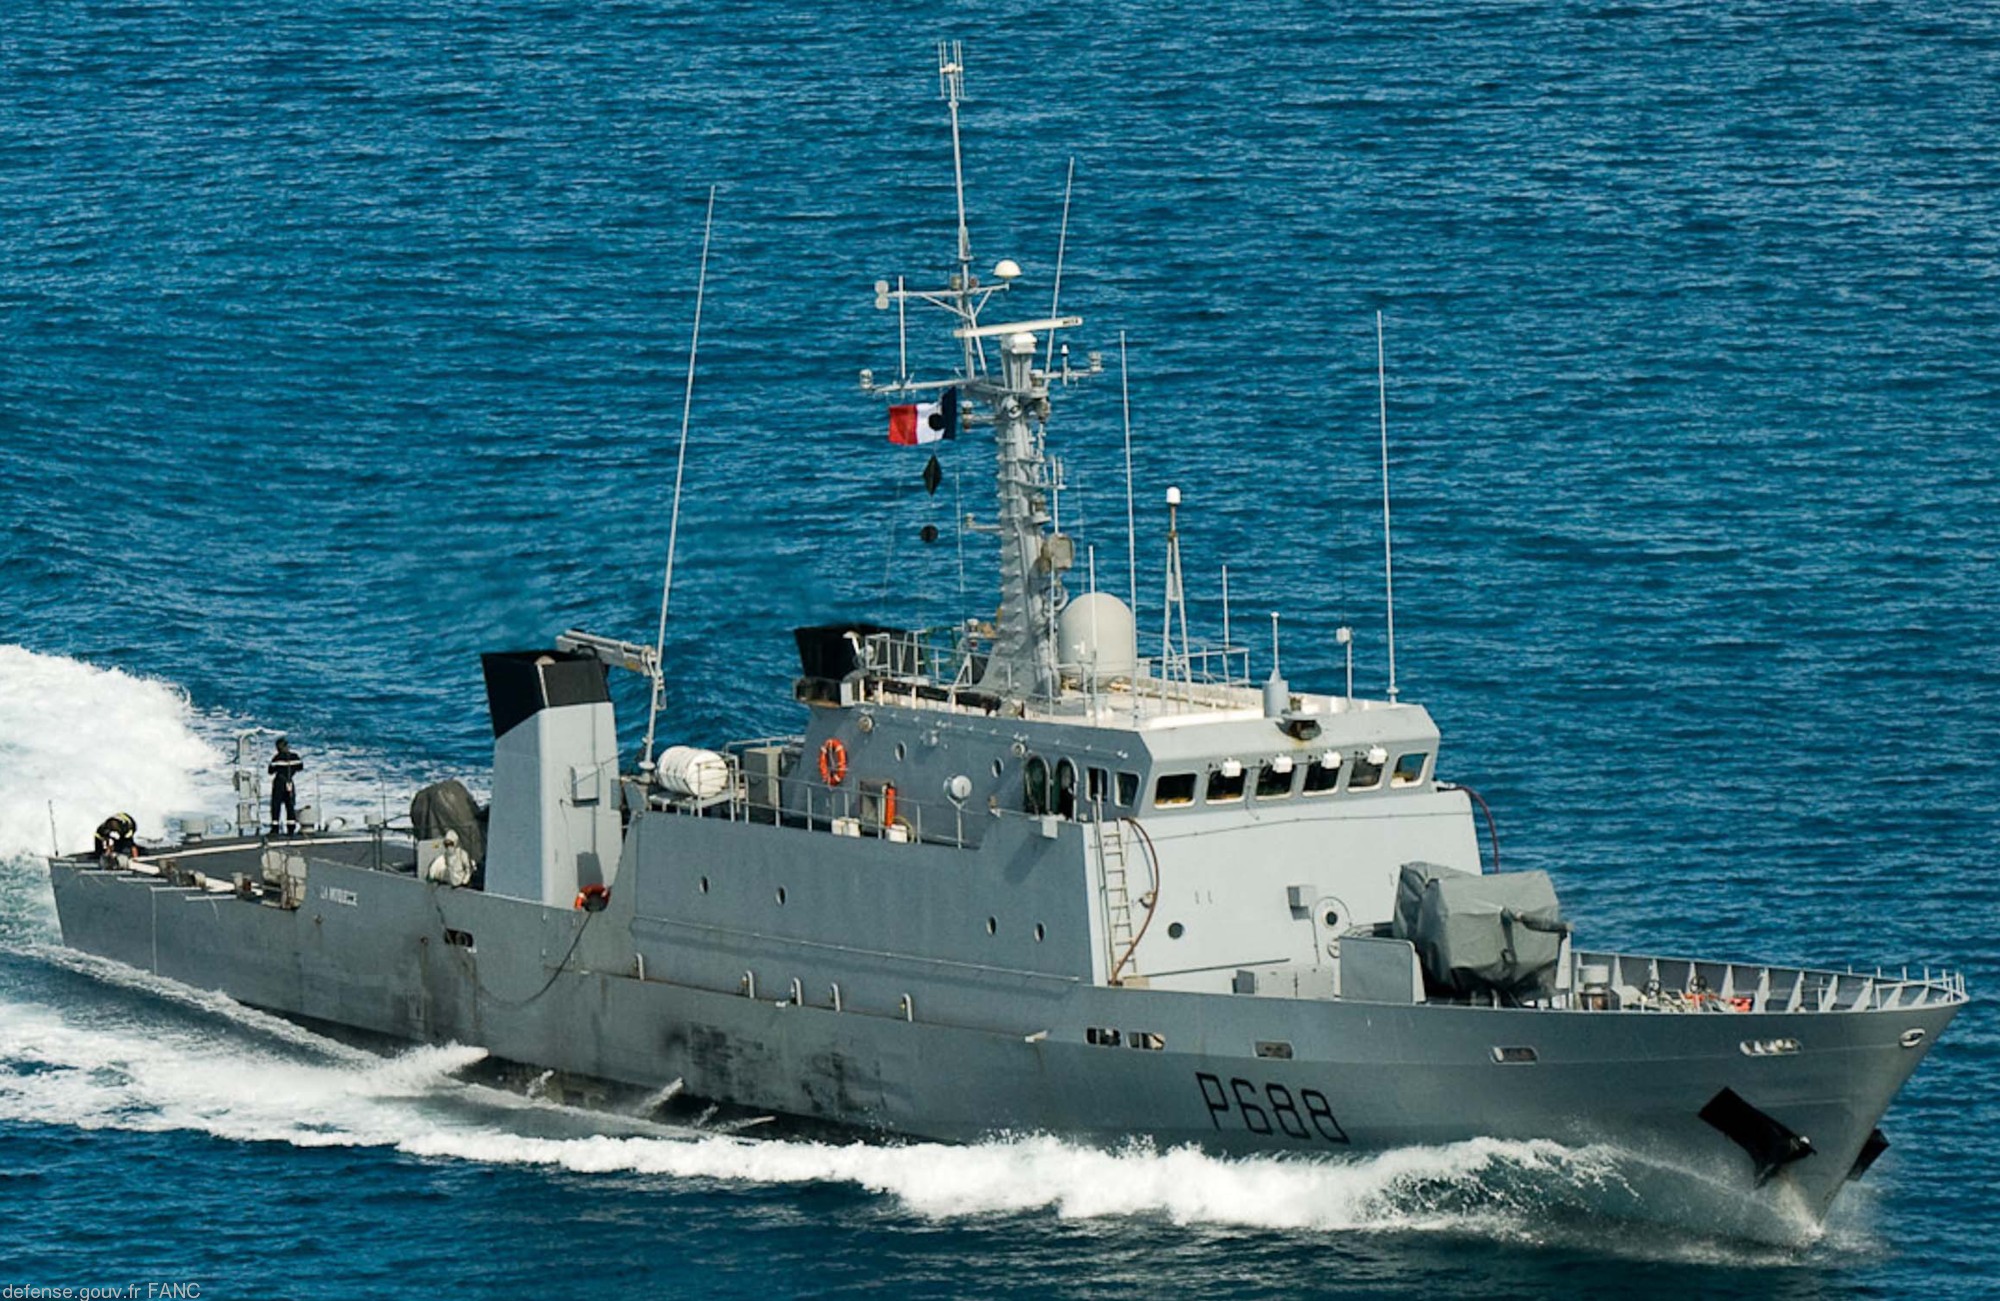 p-688 la moqueuse l'audacieuse p400 class patrol vessel french navy patrouilleur marine nationale 02